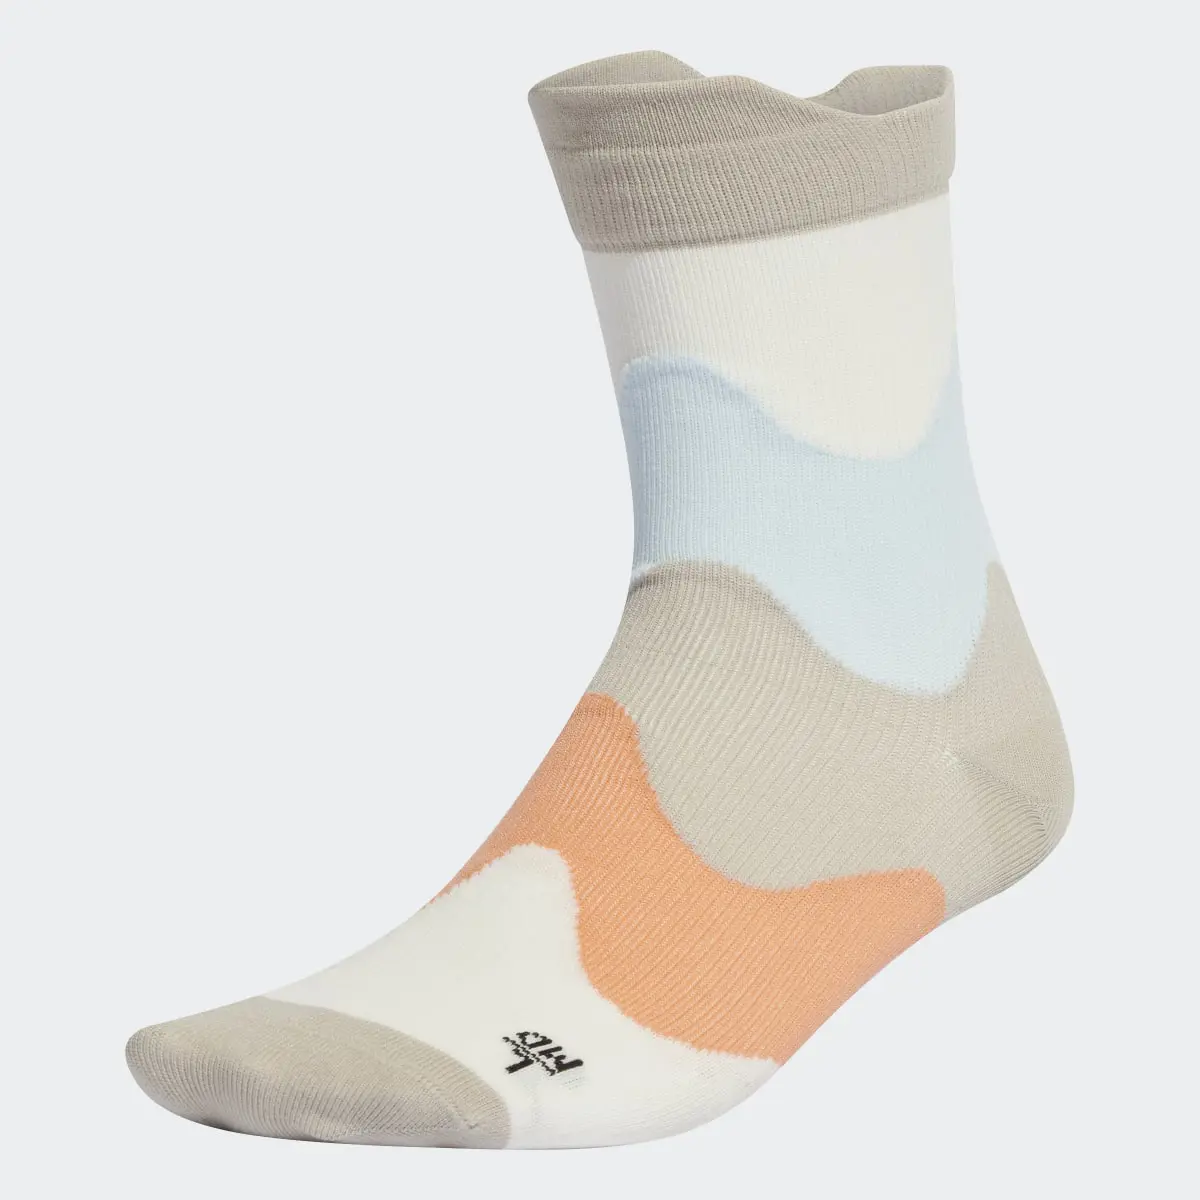 Adidas x Marimekko Training Socks. 2